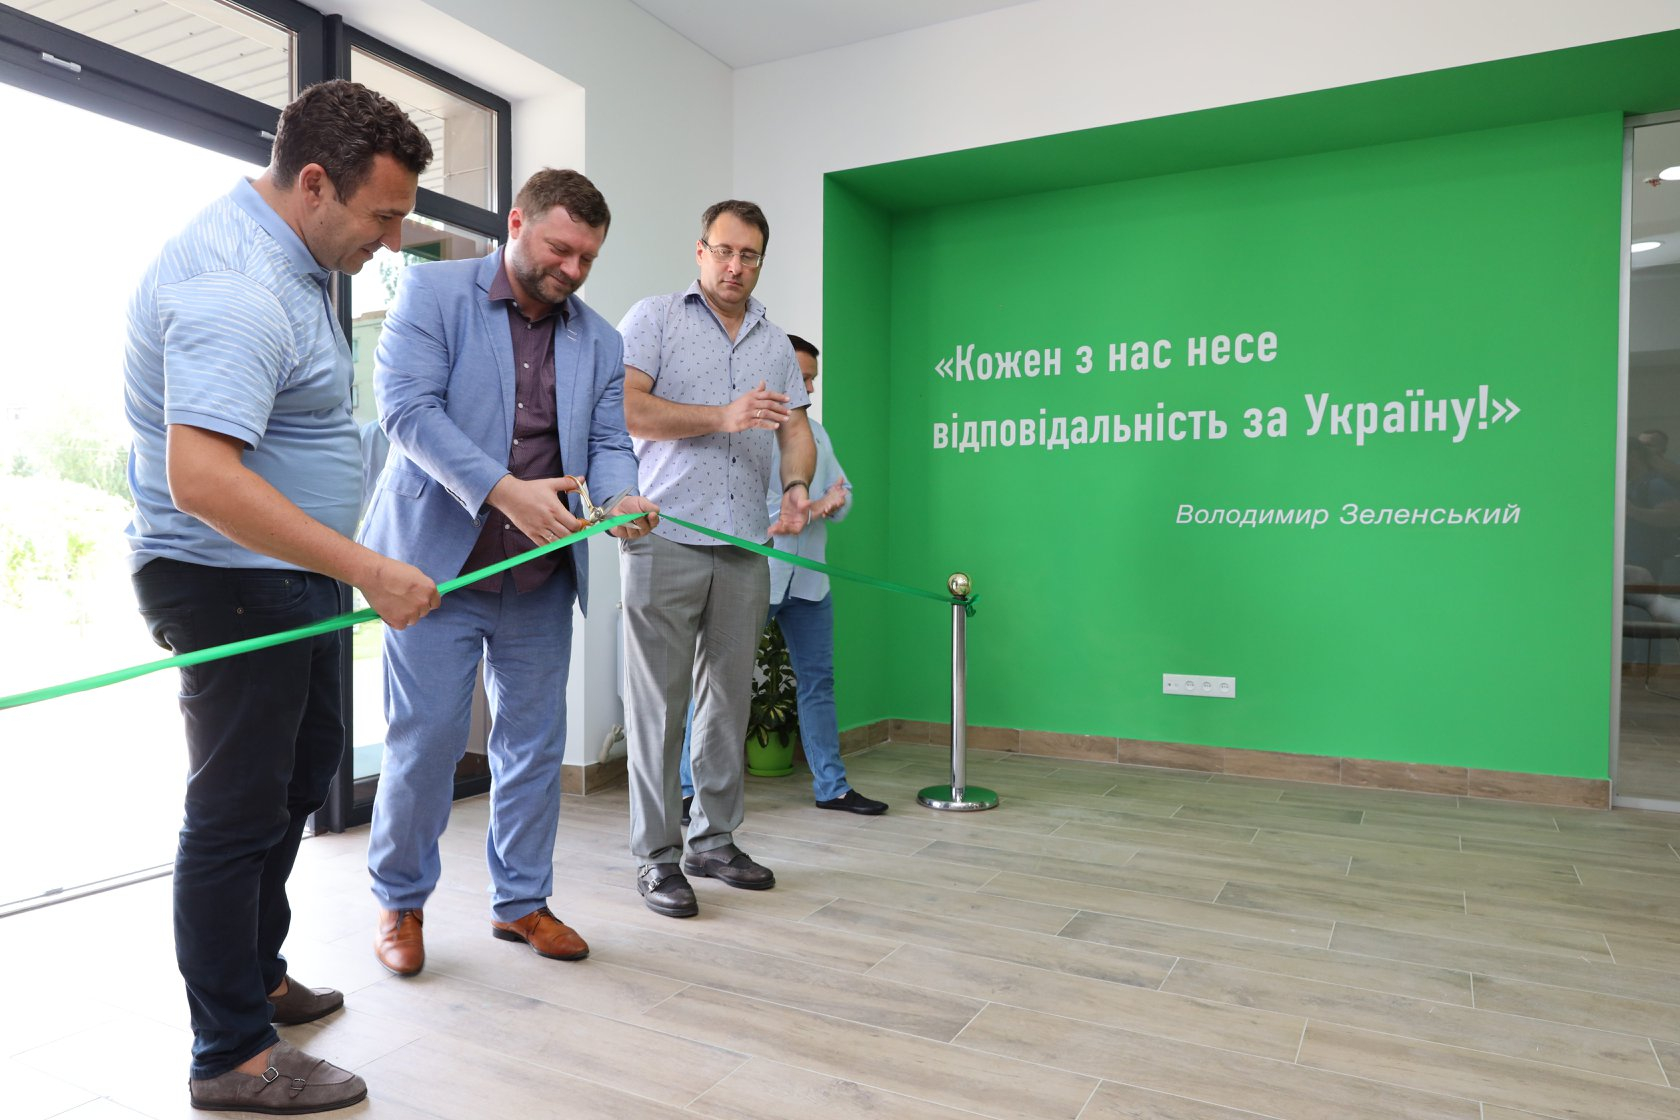 В Славянске открыли областную ячейку партии "Слуга народа" во главе с Владленом Неклюдовым